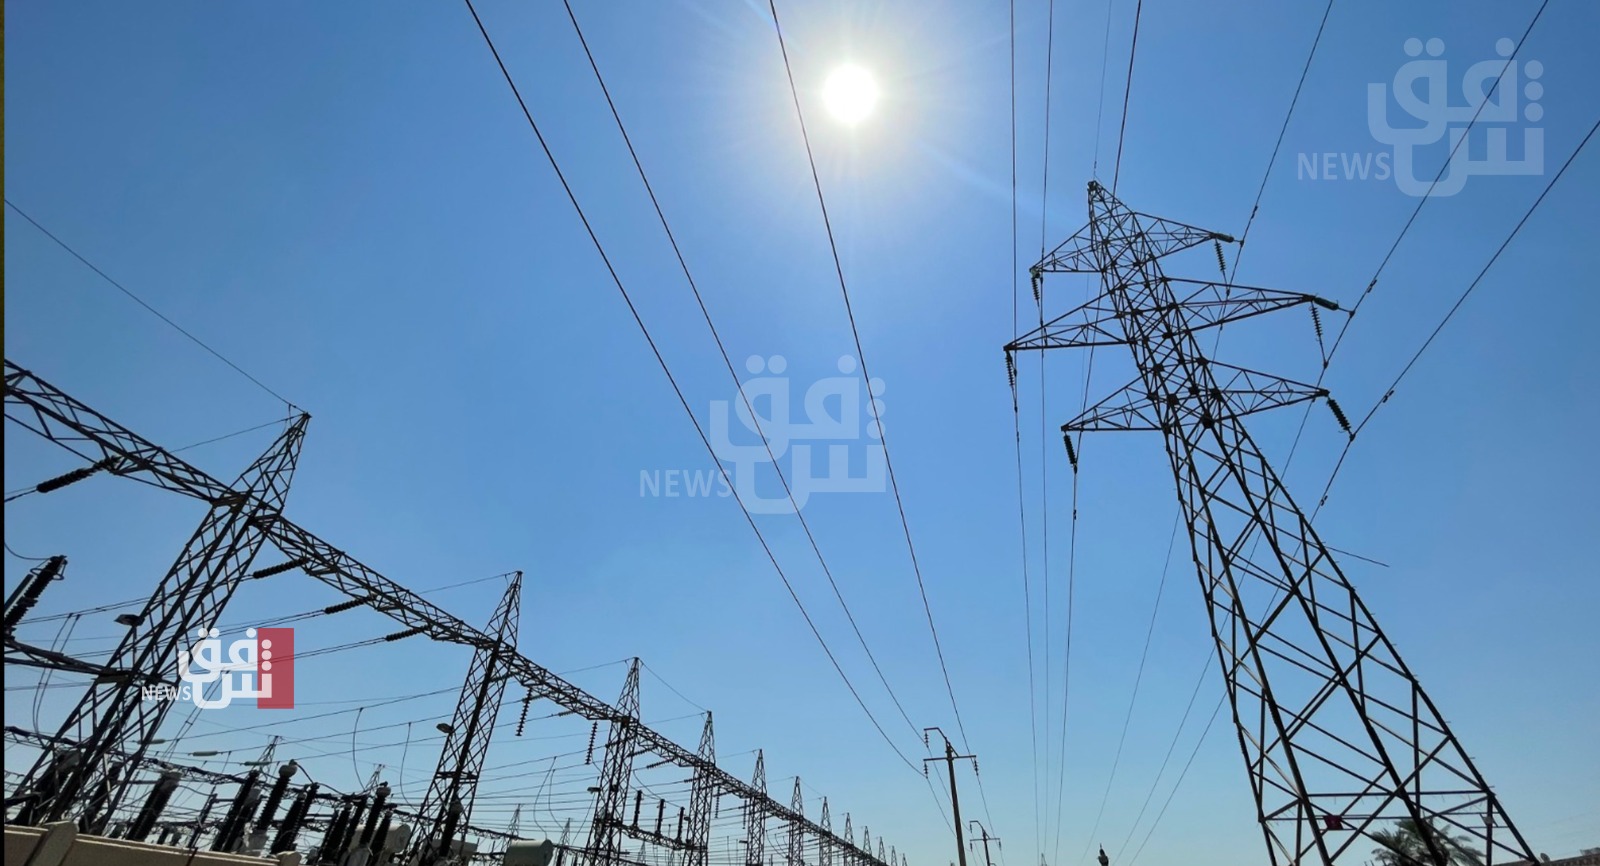 وزارة الكهرباء بإقليم كوردستان تعلن العودة التدريجية للطاقة